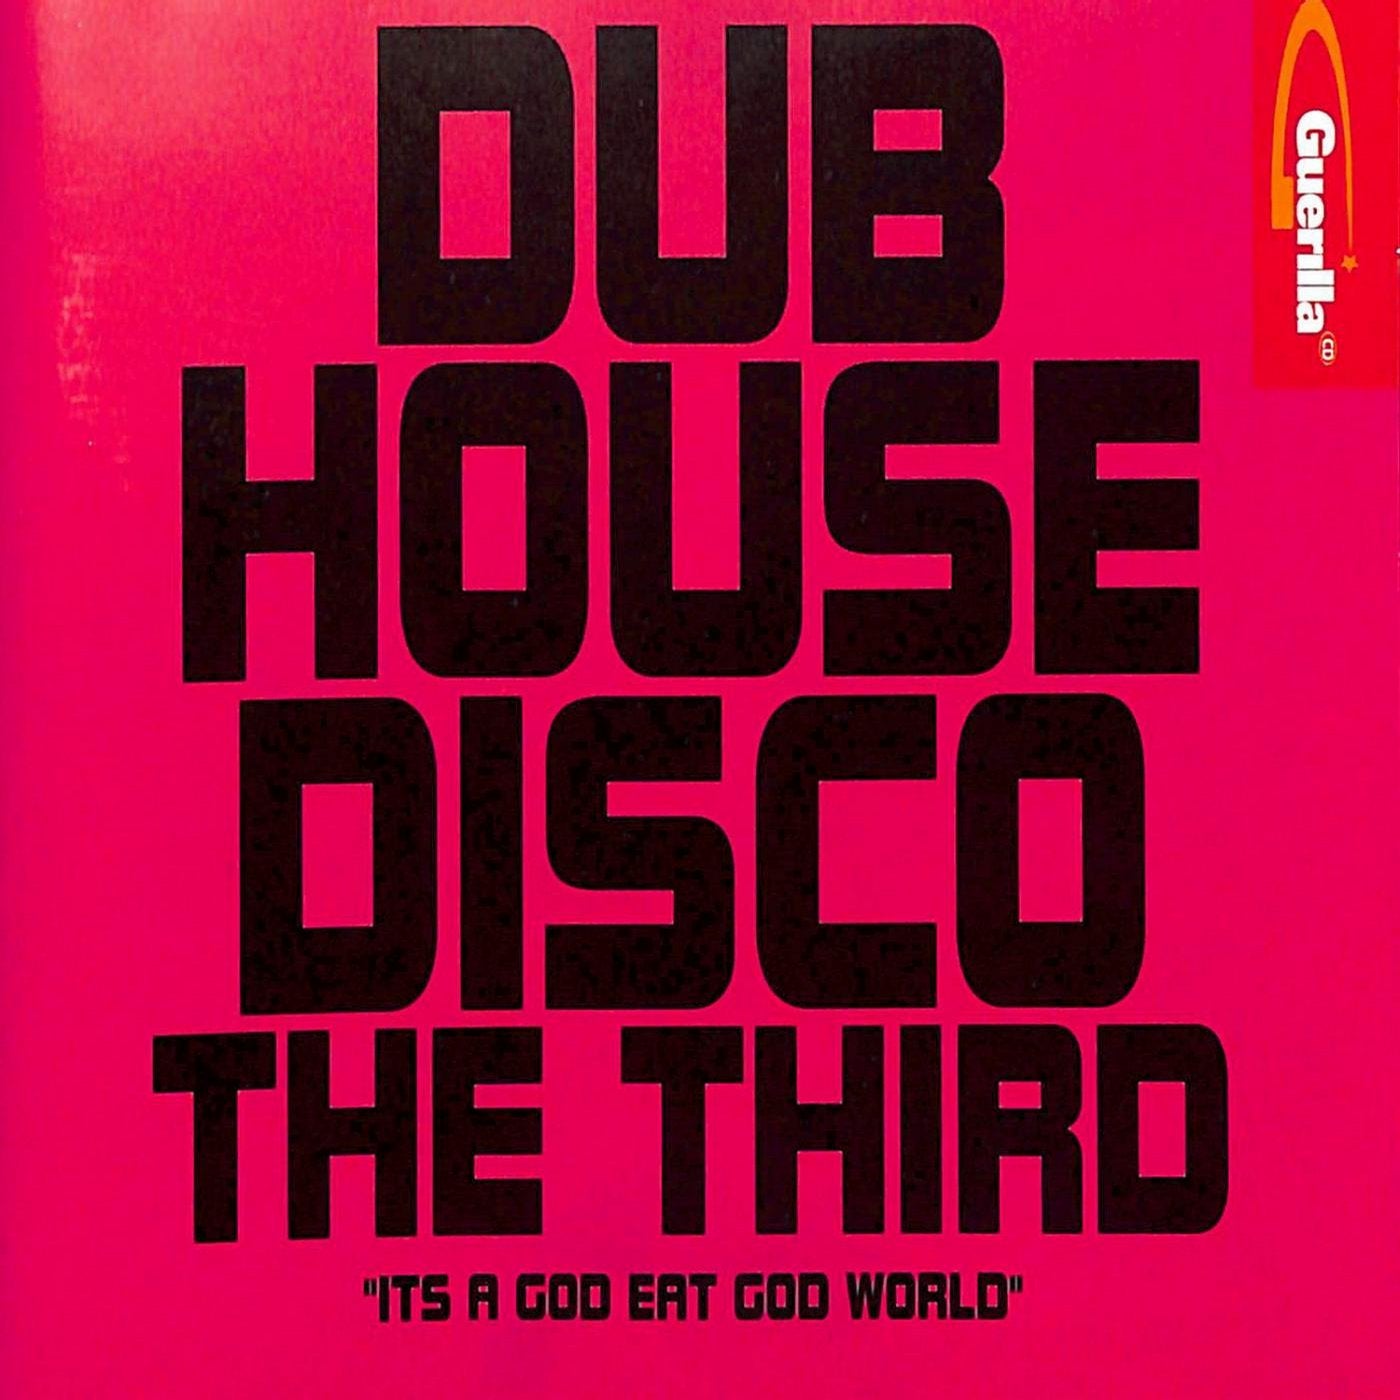 Dub House Disco The Third